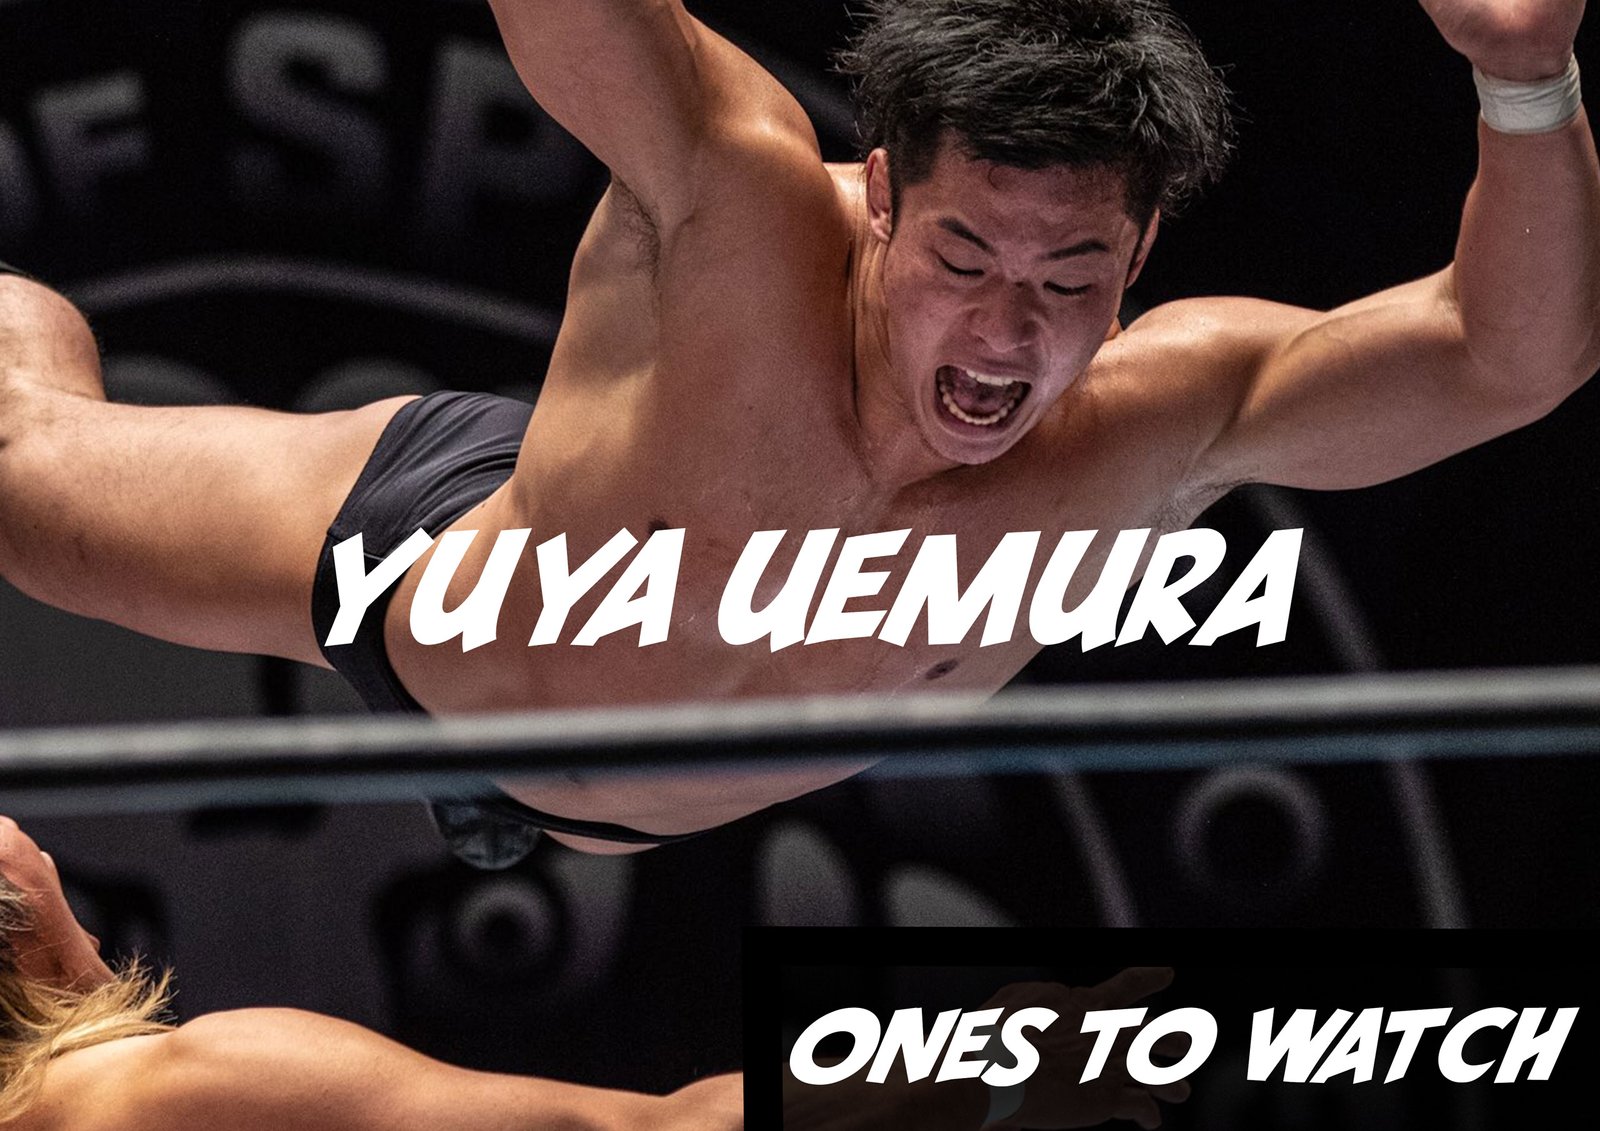 Ones To Watch, 12.05.22 - Yuya Uemura